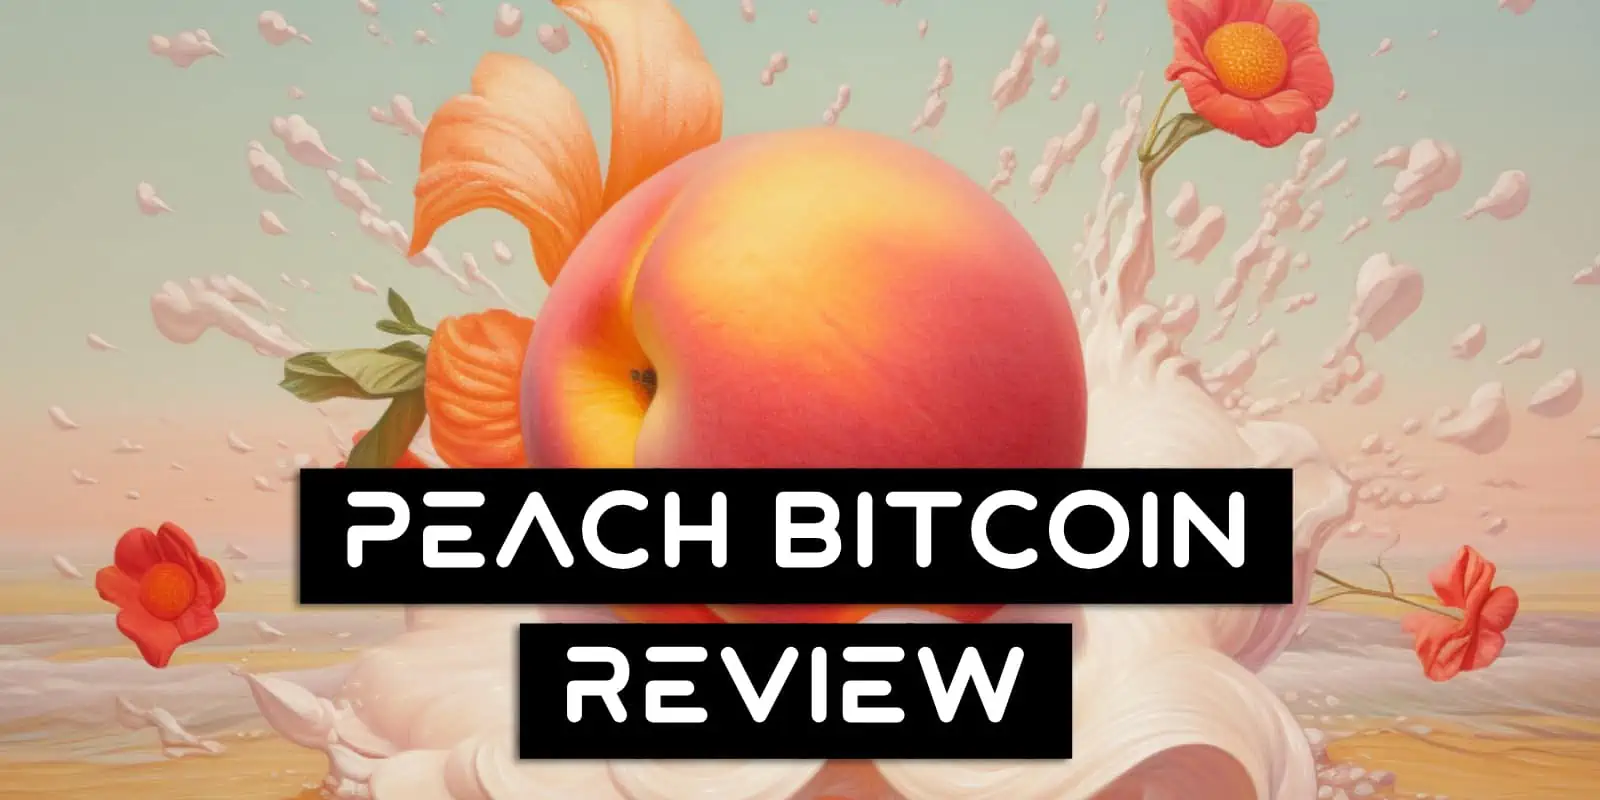 Peach Bitcoin Review